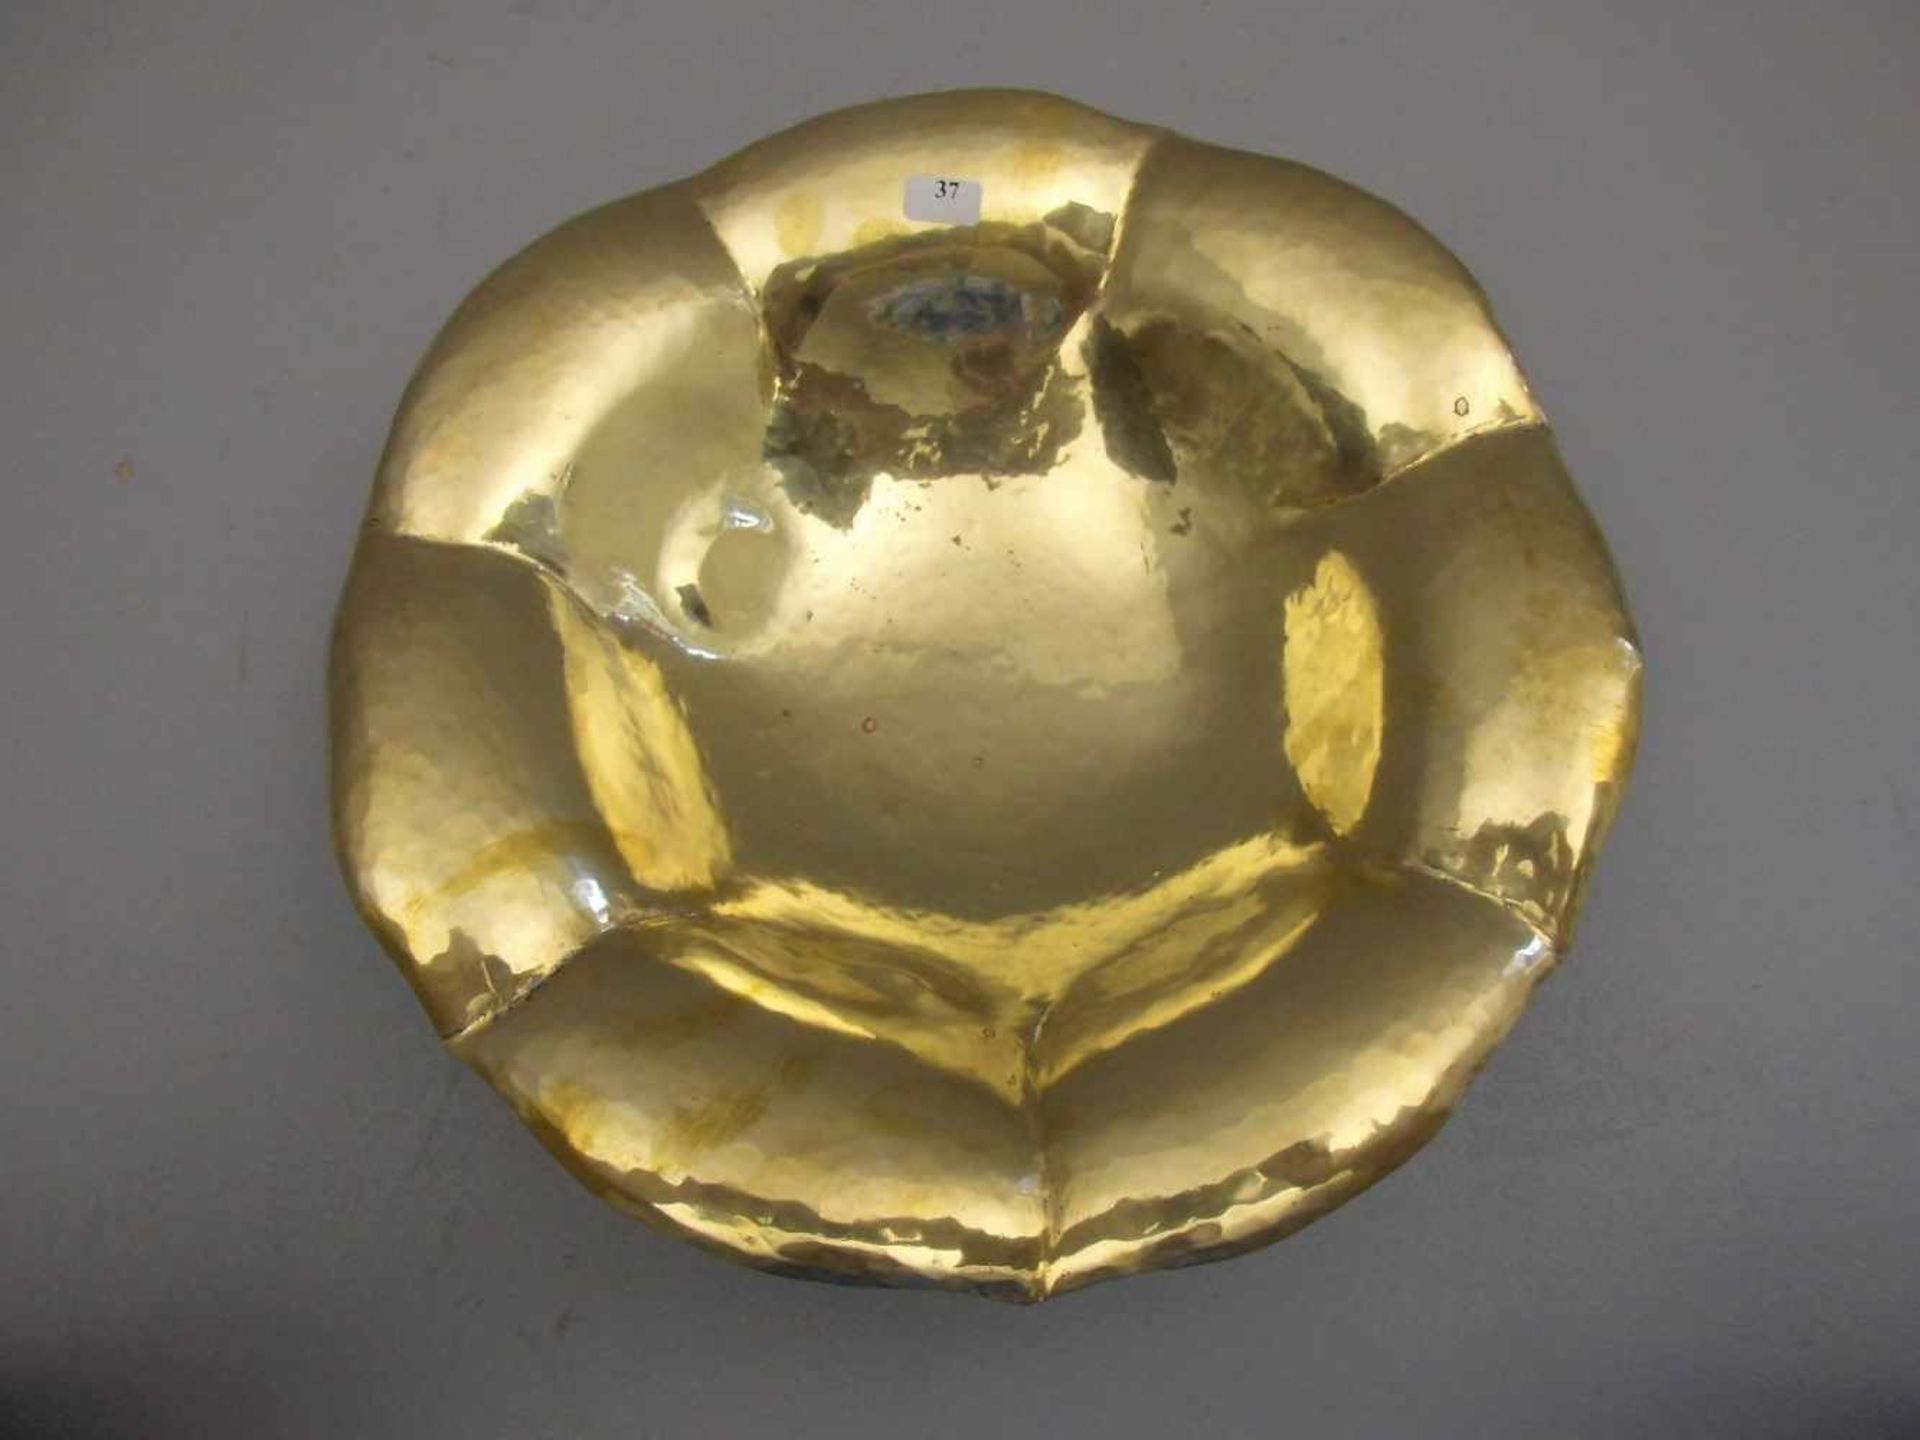 ART DÉCO - SCHALE, um 1920, goldfarbenes Metall, gemarkt Heyer, bezeichnet "Handarbeit" und - Bild 2 aus 4